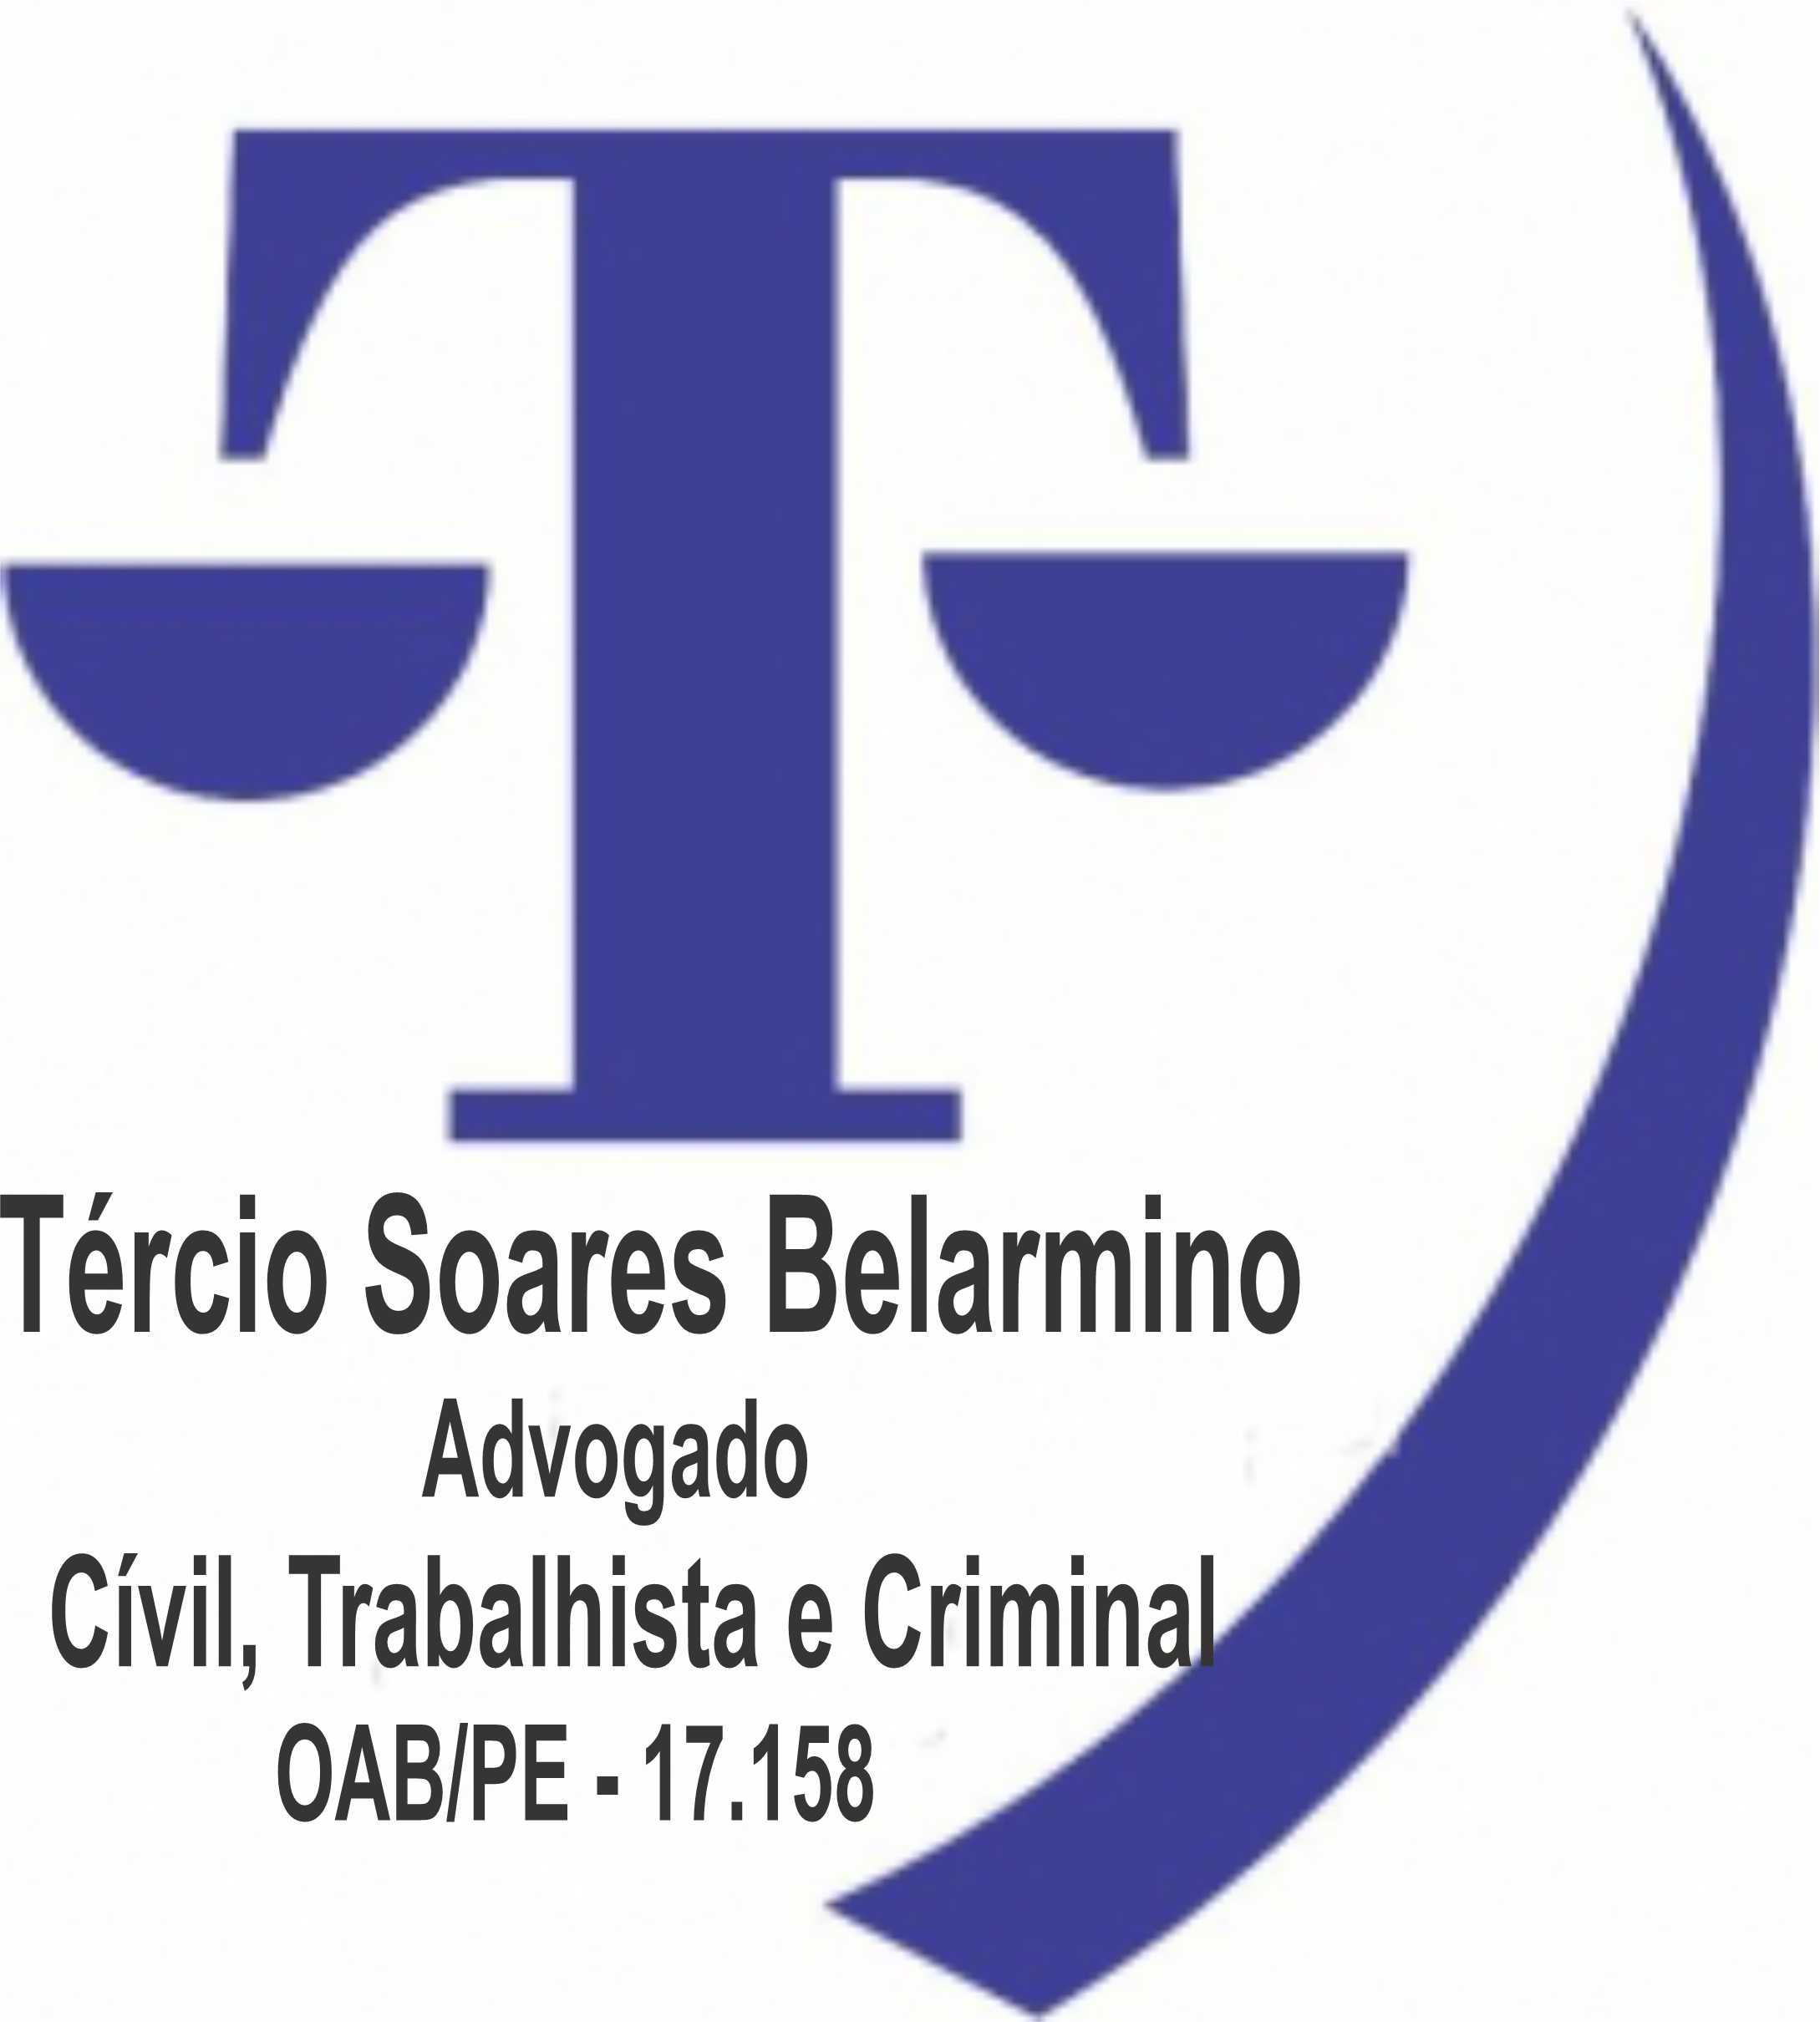 Dr. Tércio Soares Belarmino